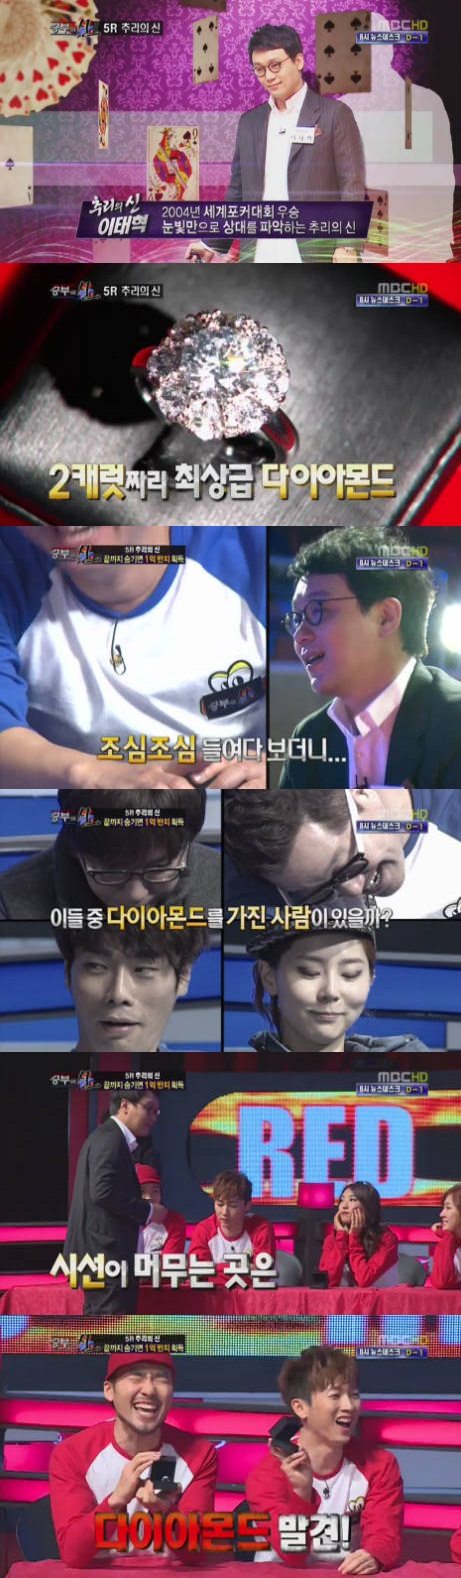 '승부의 신' 포커 세계 챔피언 이태혁의 놀라운 추리력